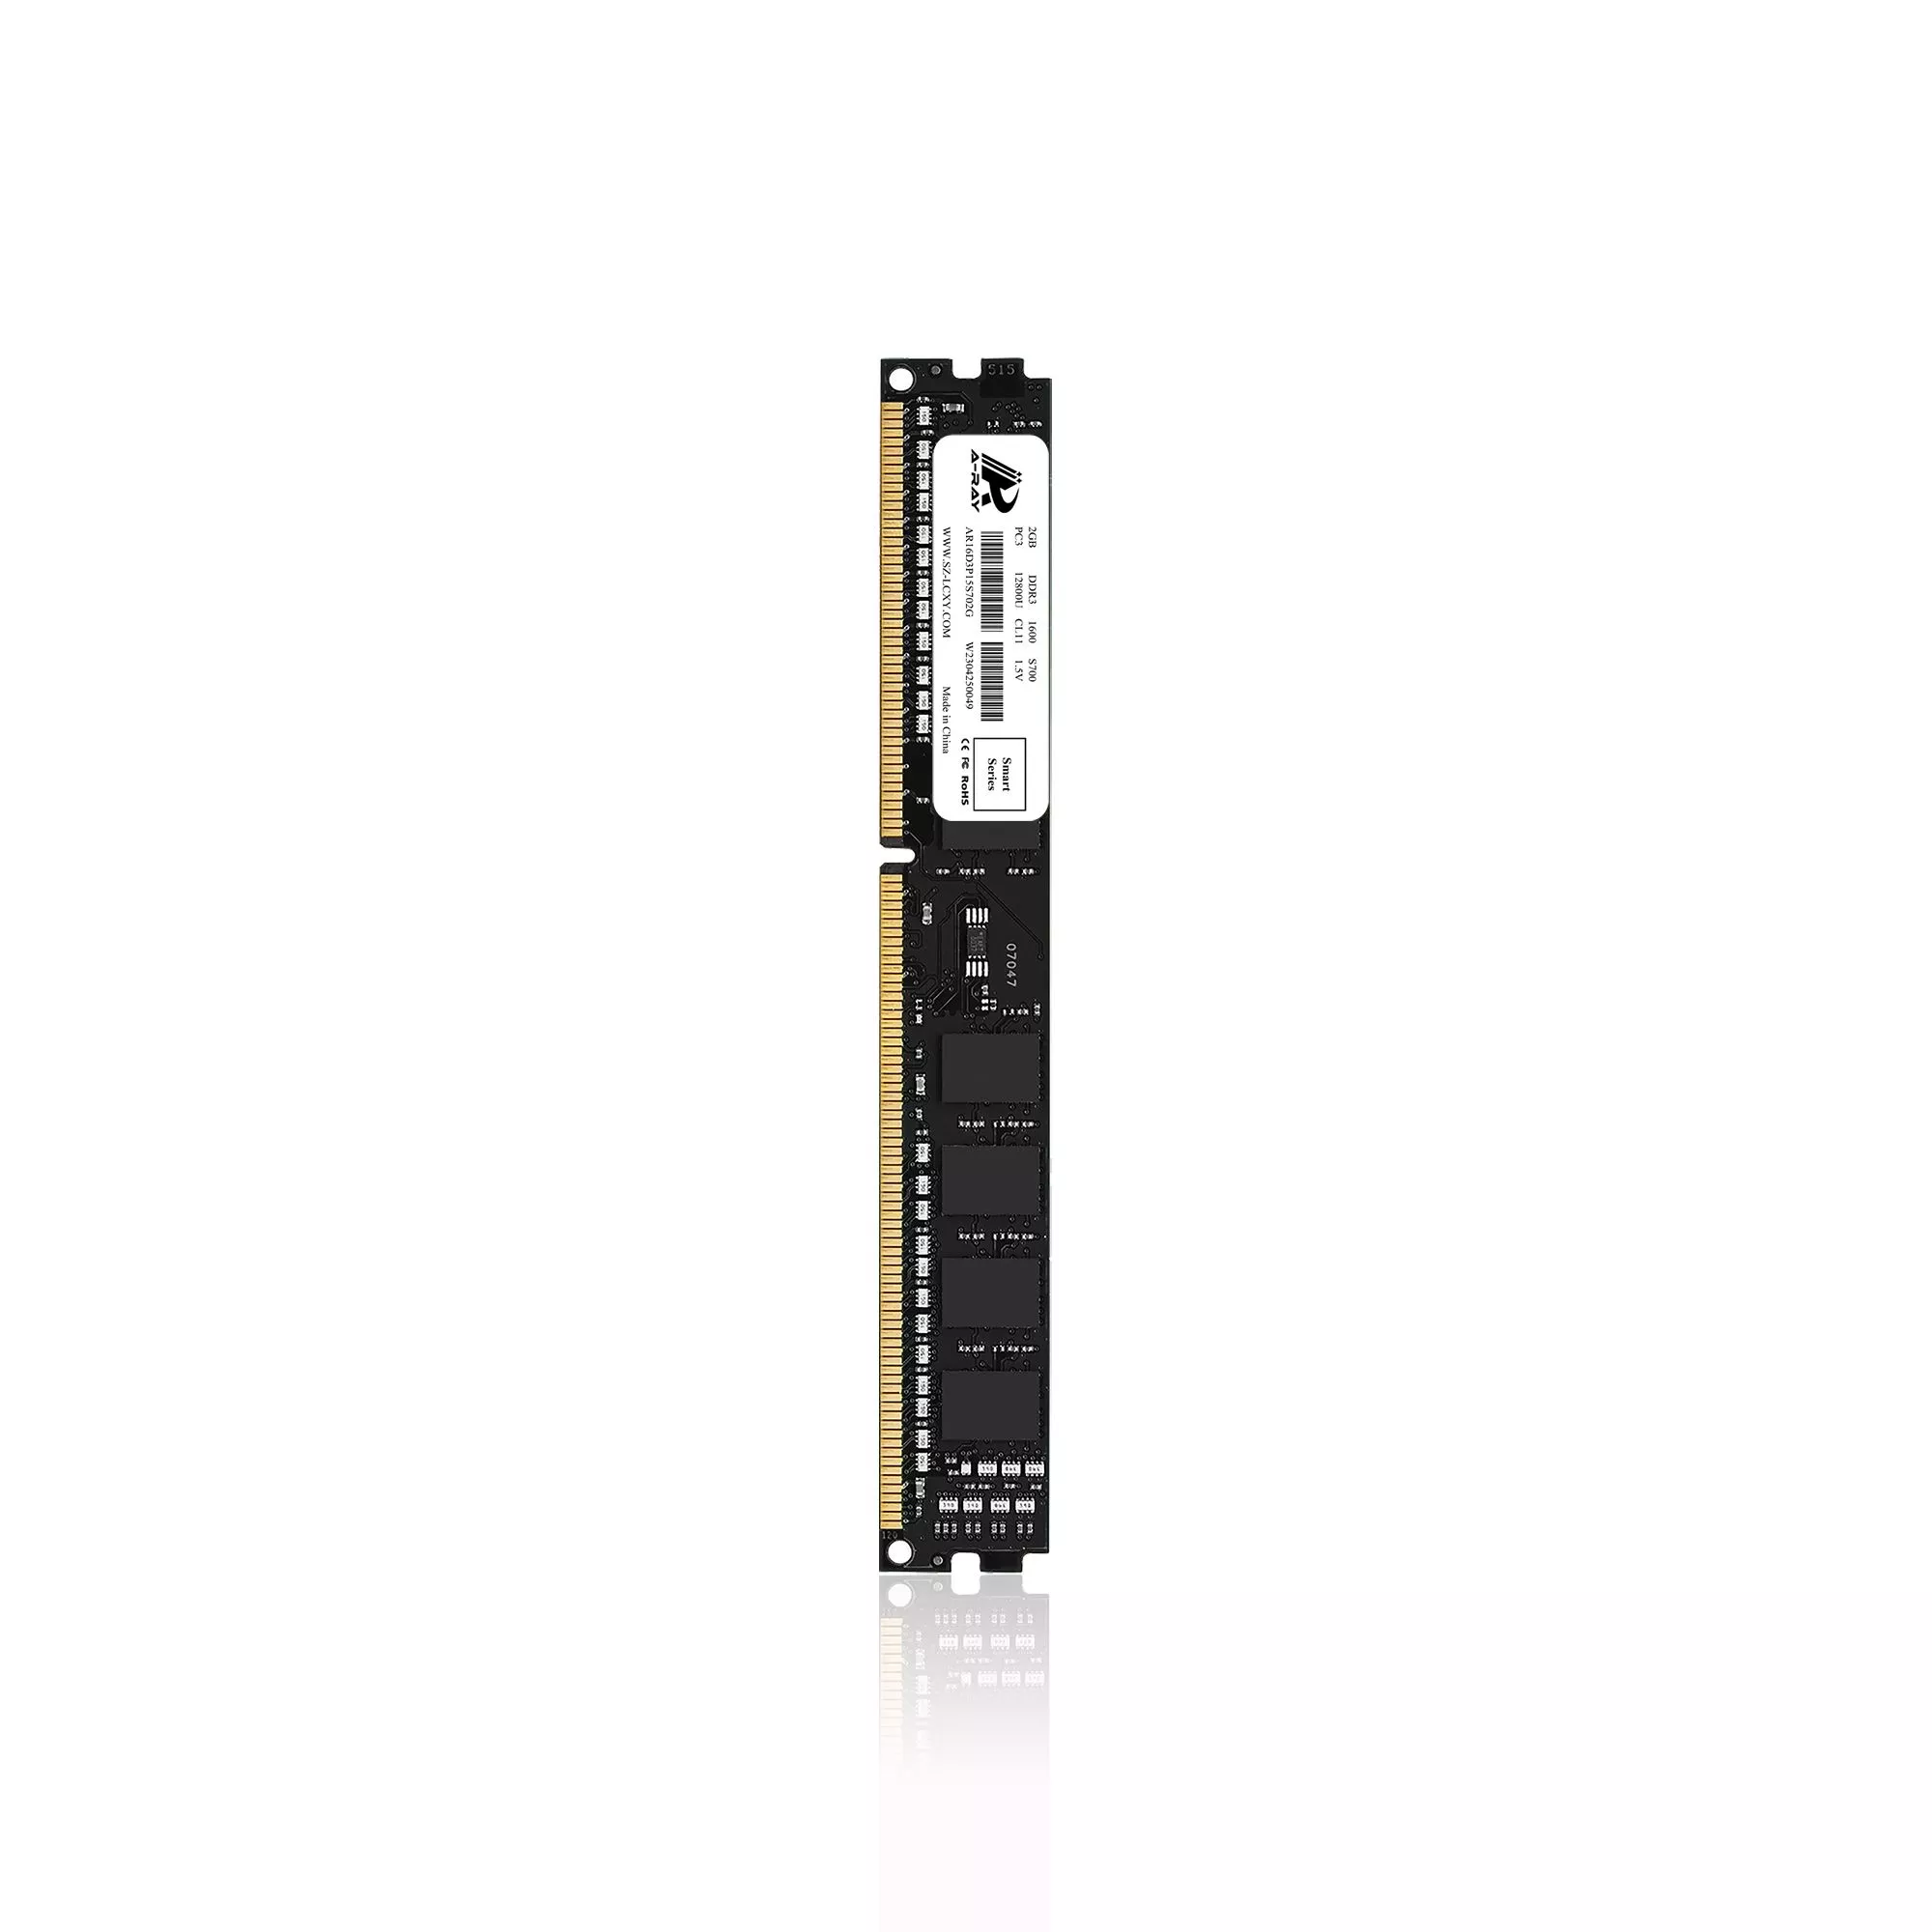 Ram A-Ray 2GB DDR3 Bus 1600 Mhz Desktop S700 12,800 MB/s P/N: AR16D3P15S702G